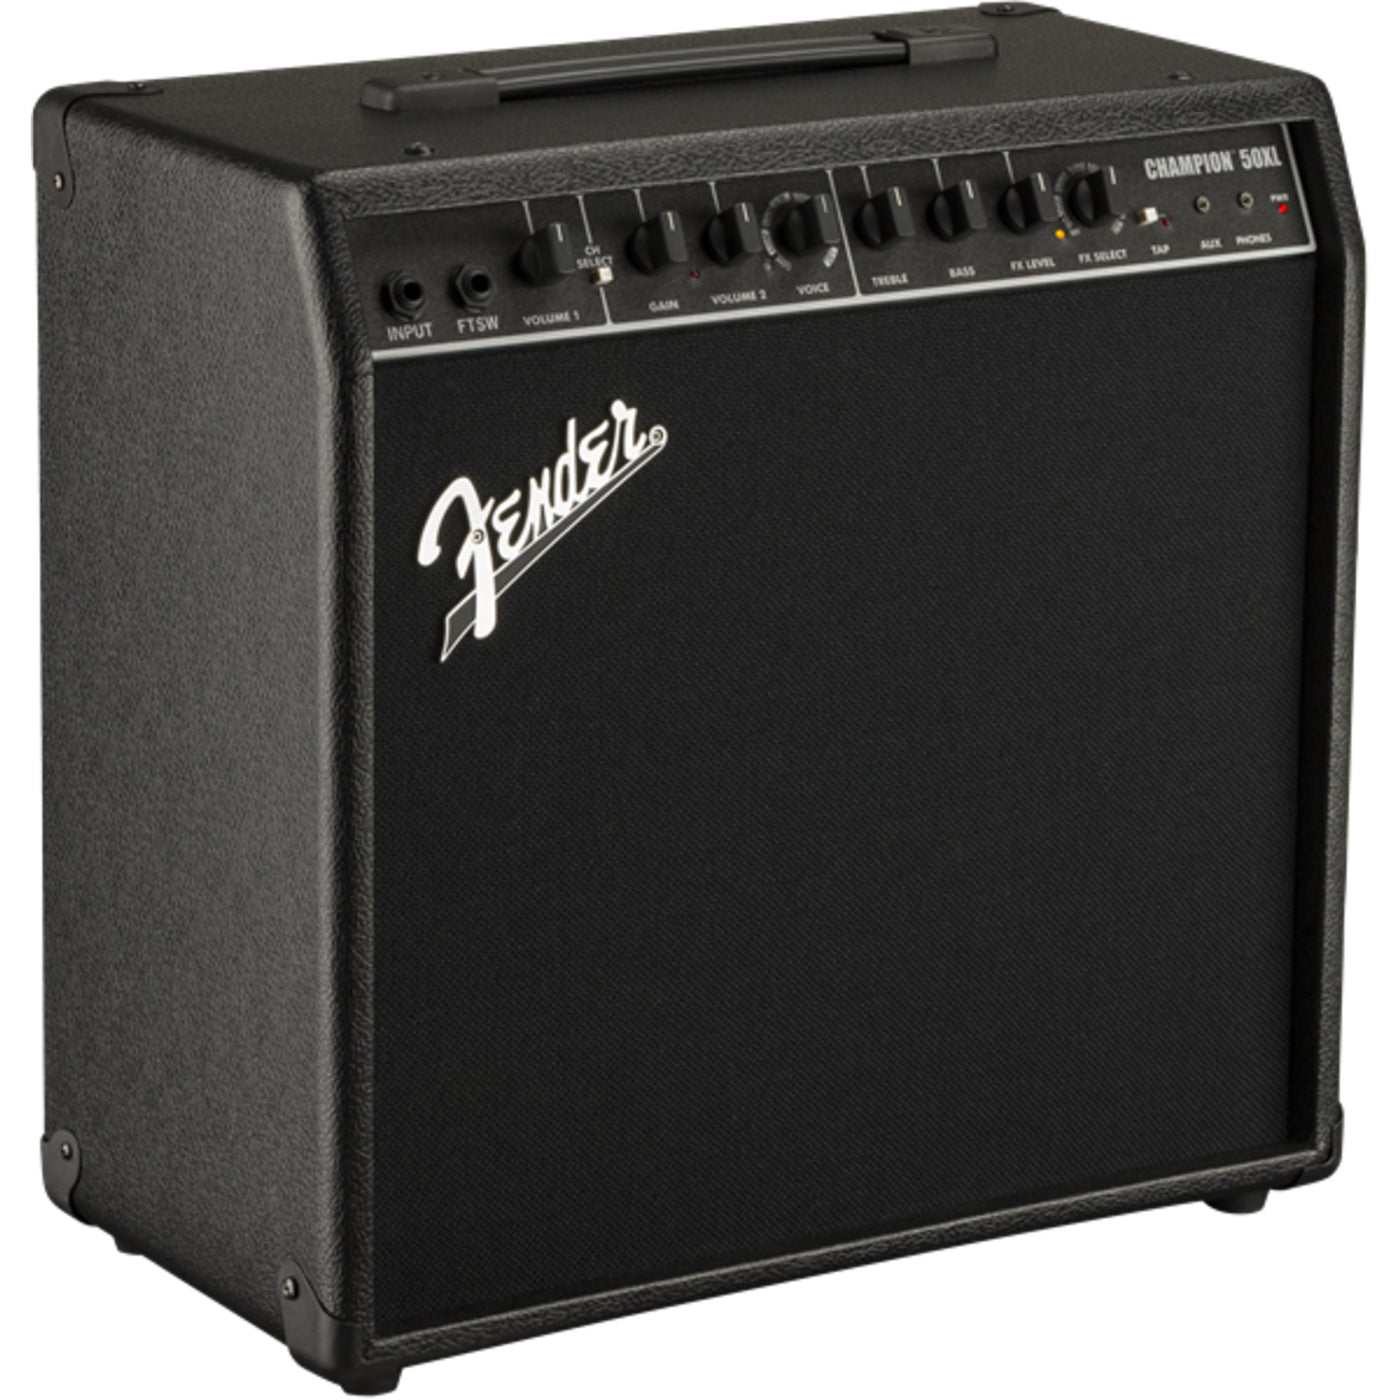 Fender Champion 50XL Amplifier, 120V (2330500000)